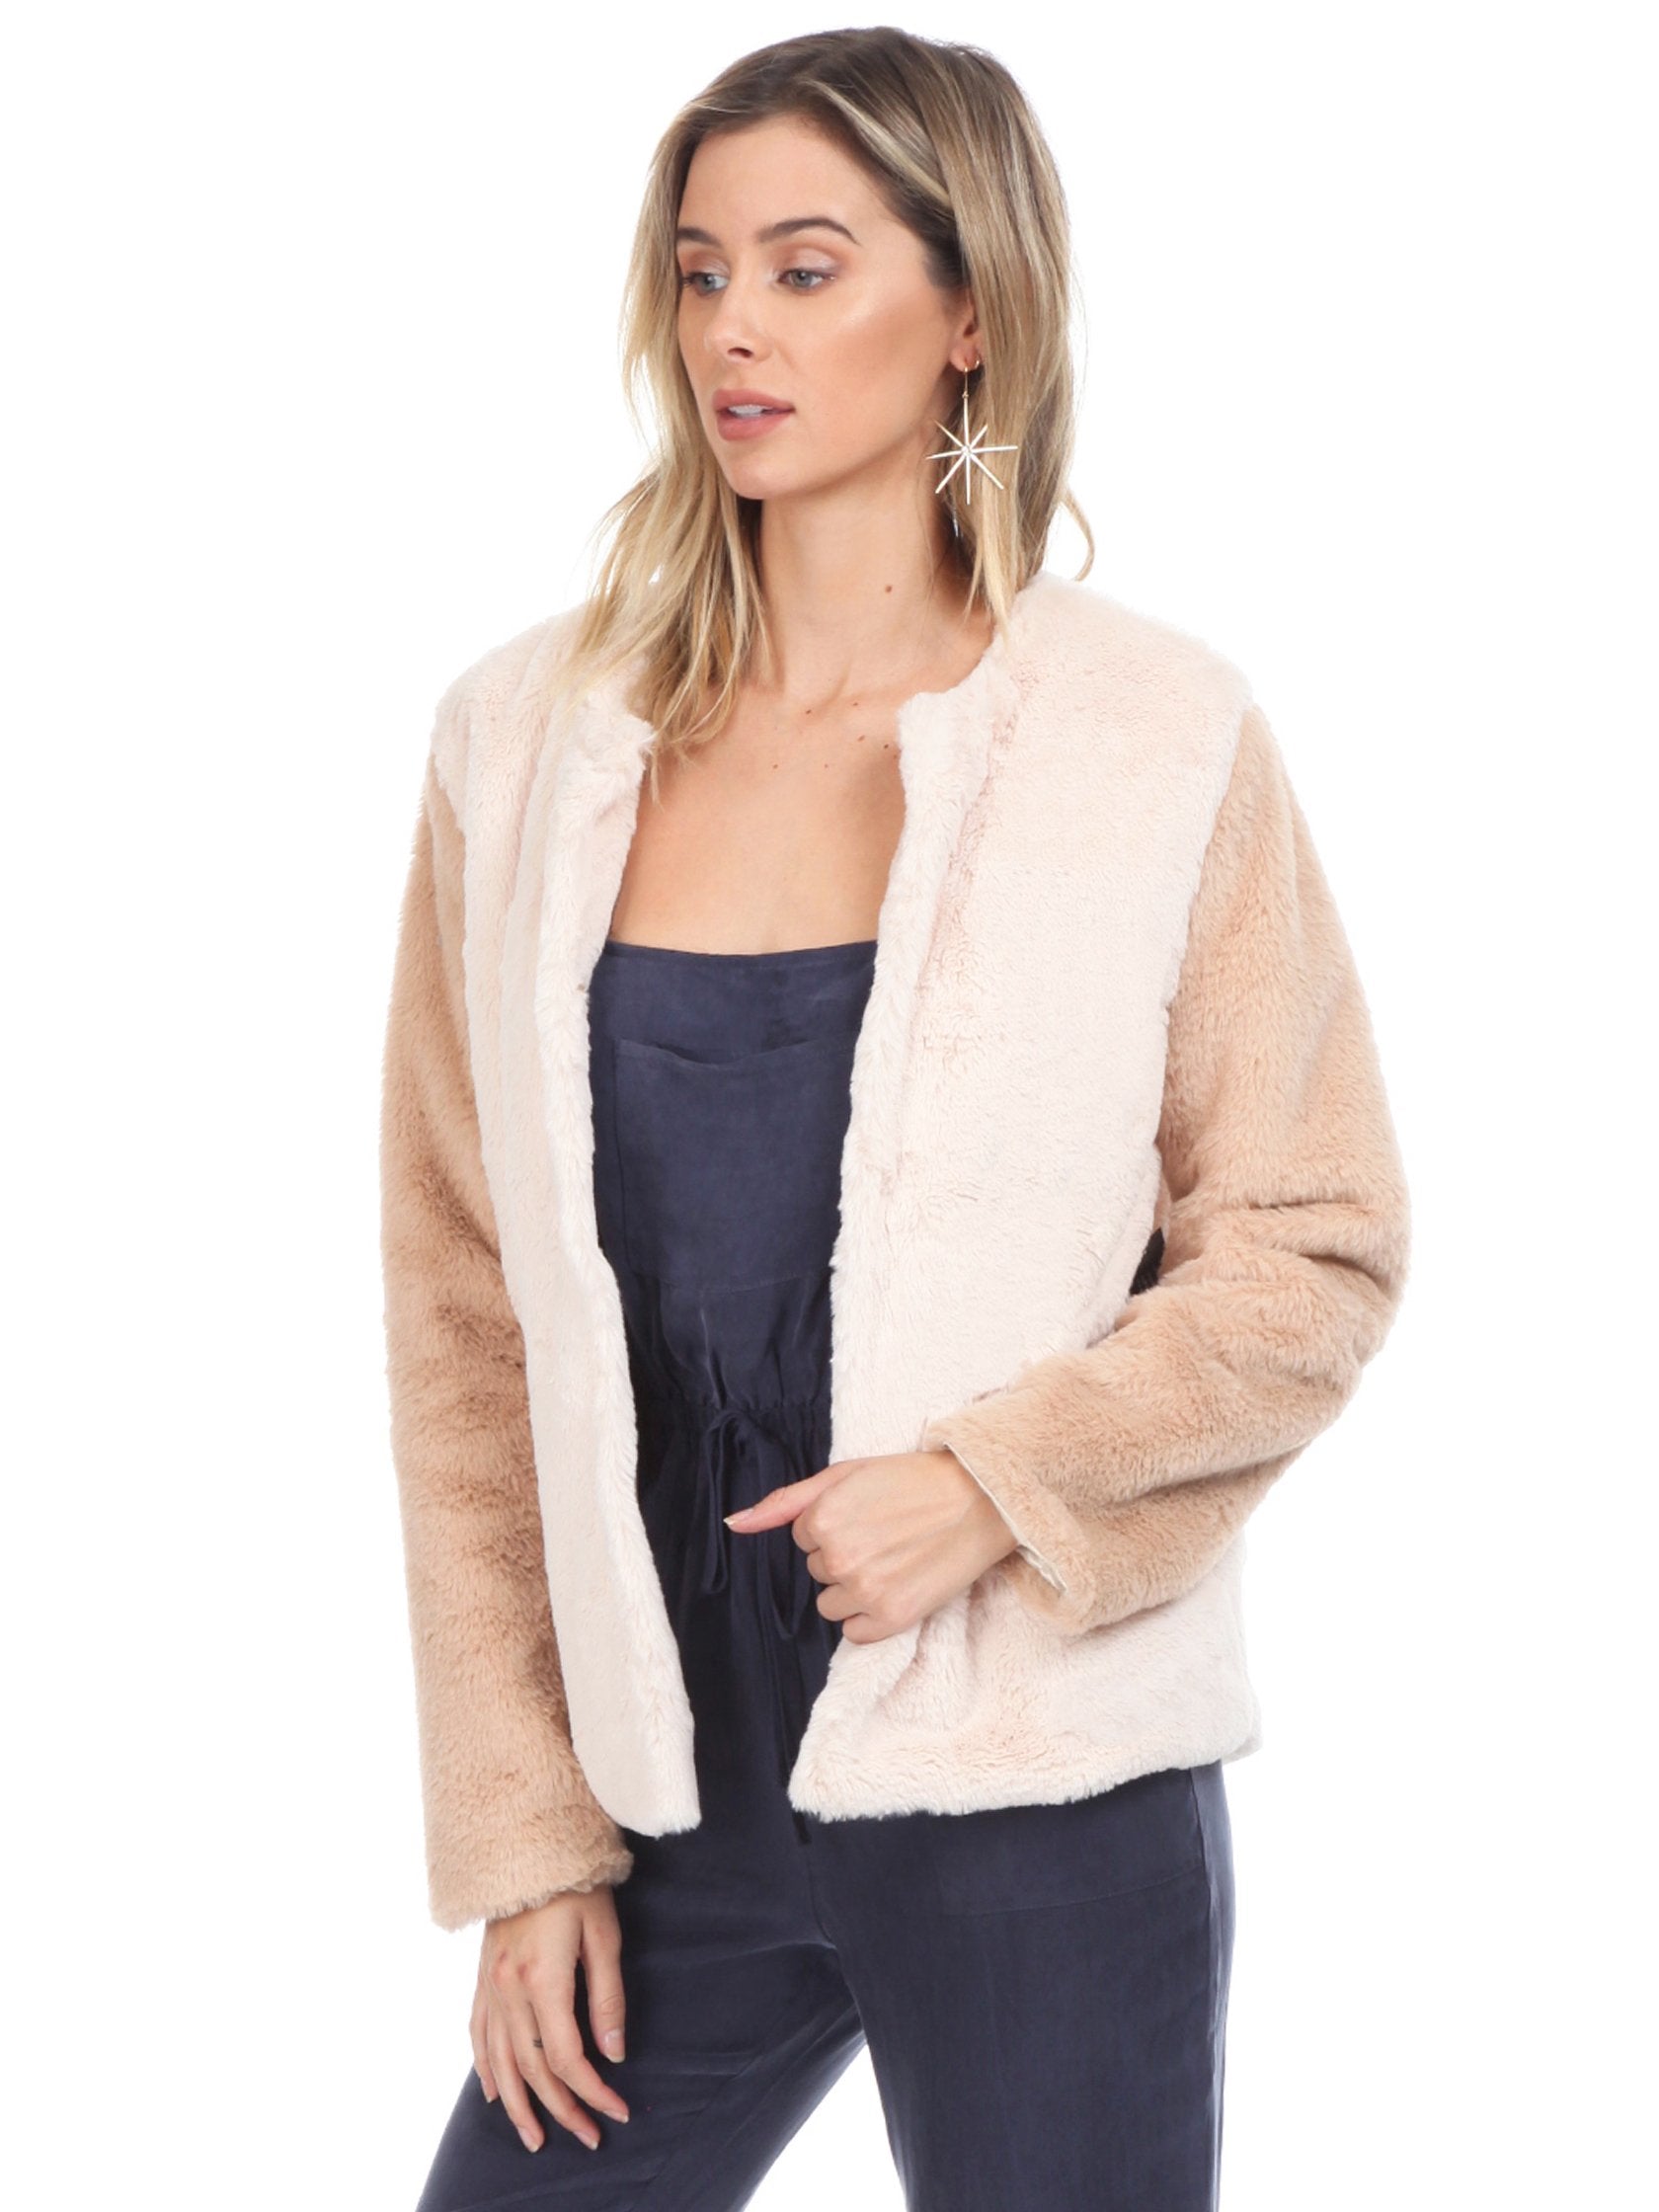 Women wearing a jacket rental from WYLDR called Heidi Faux Fur Jacket